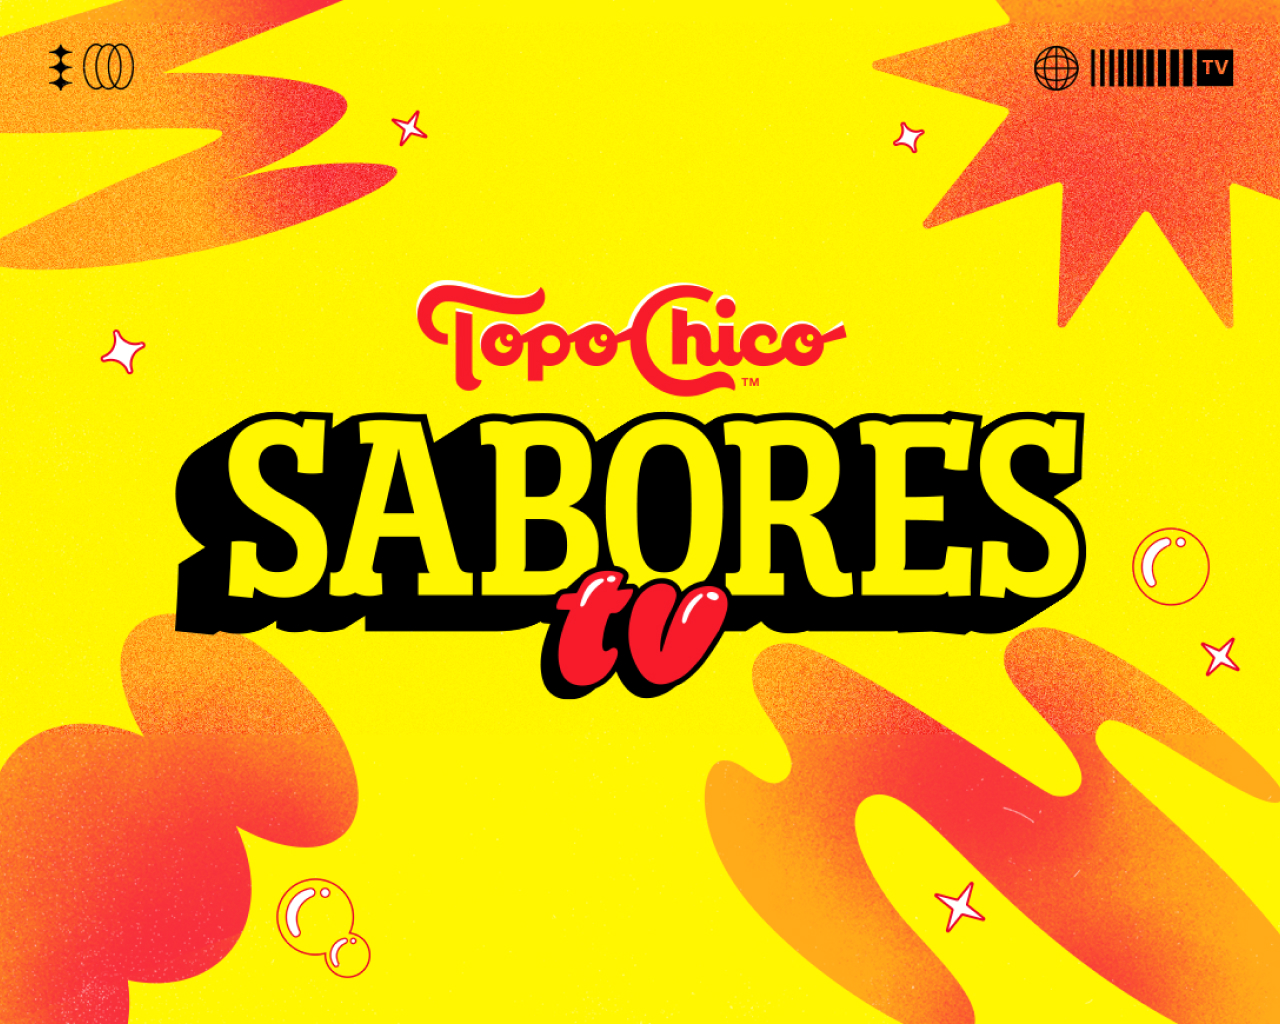 Topo chico Sabores-TV